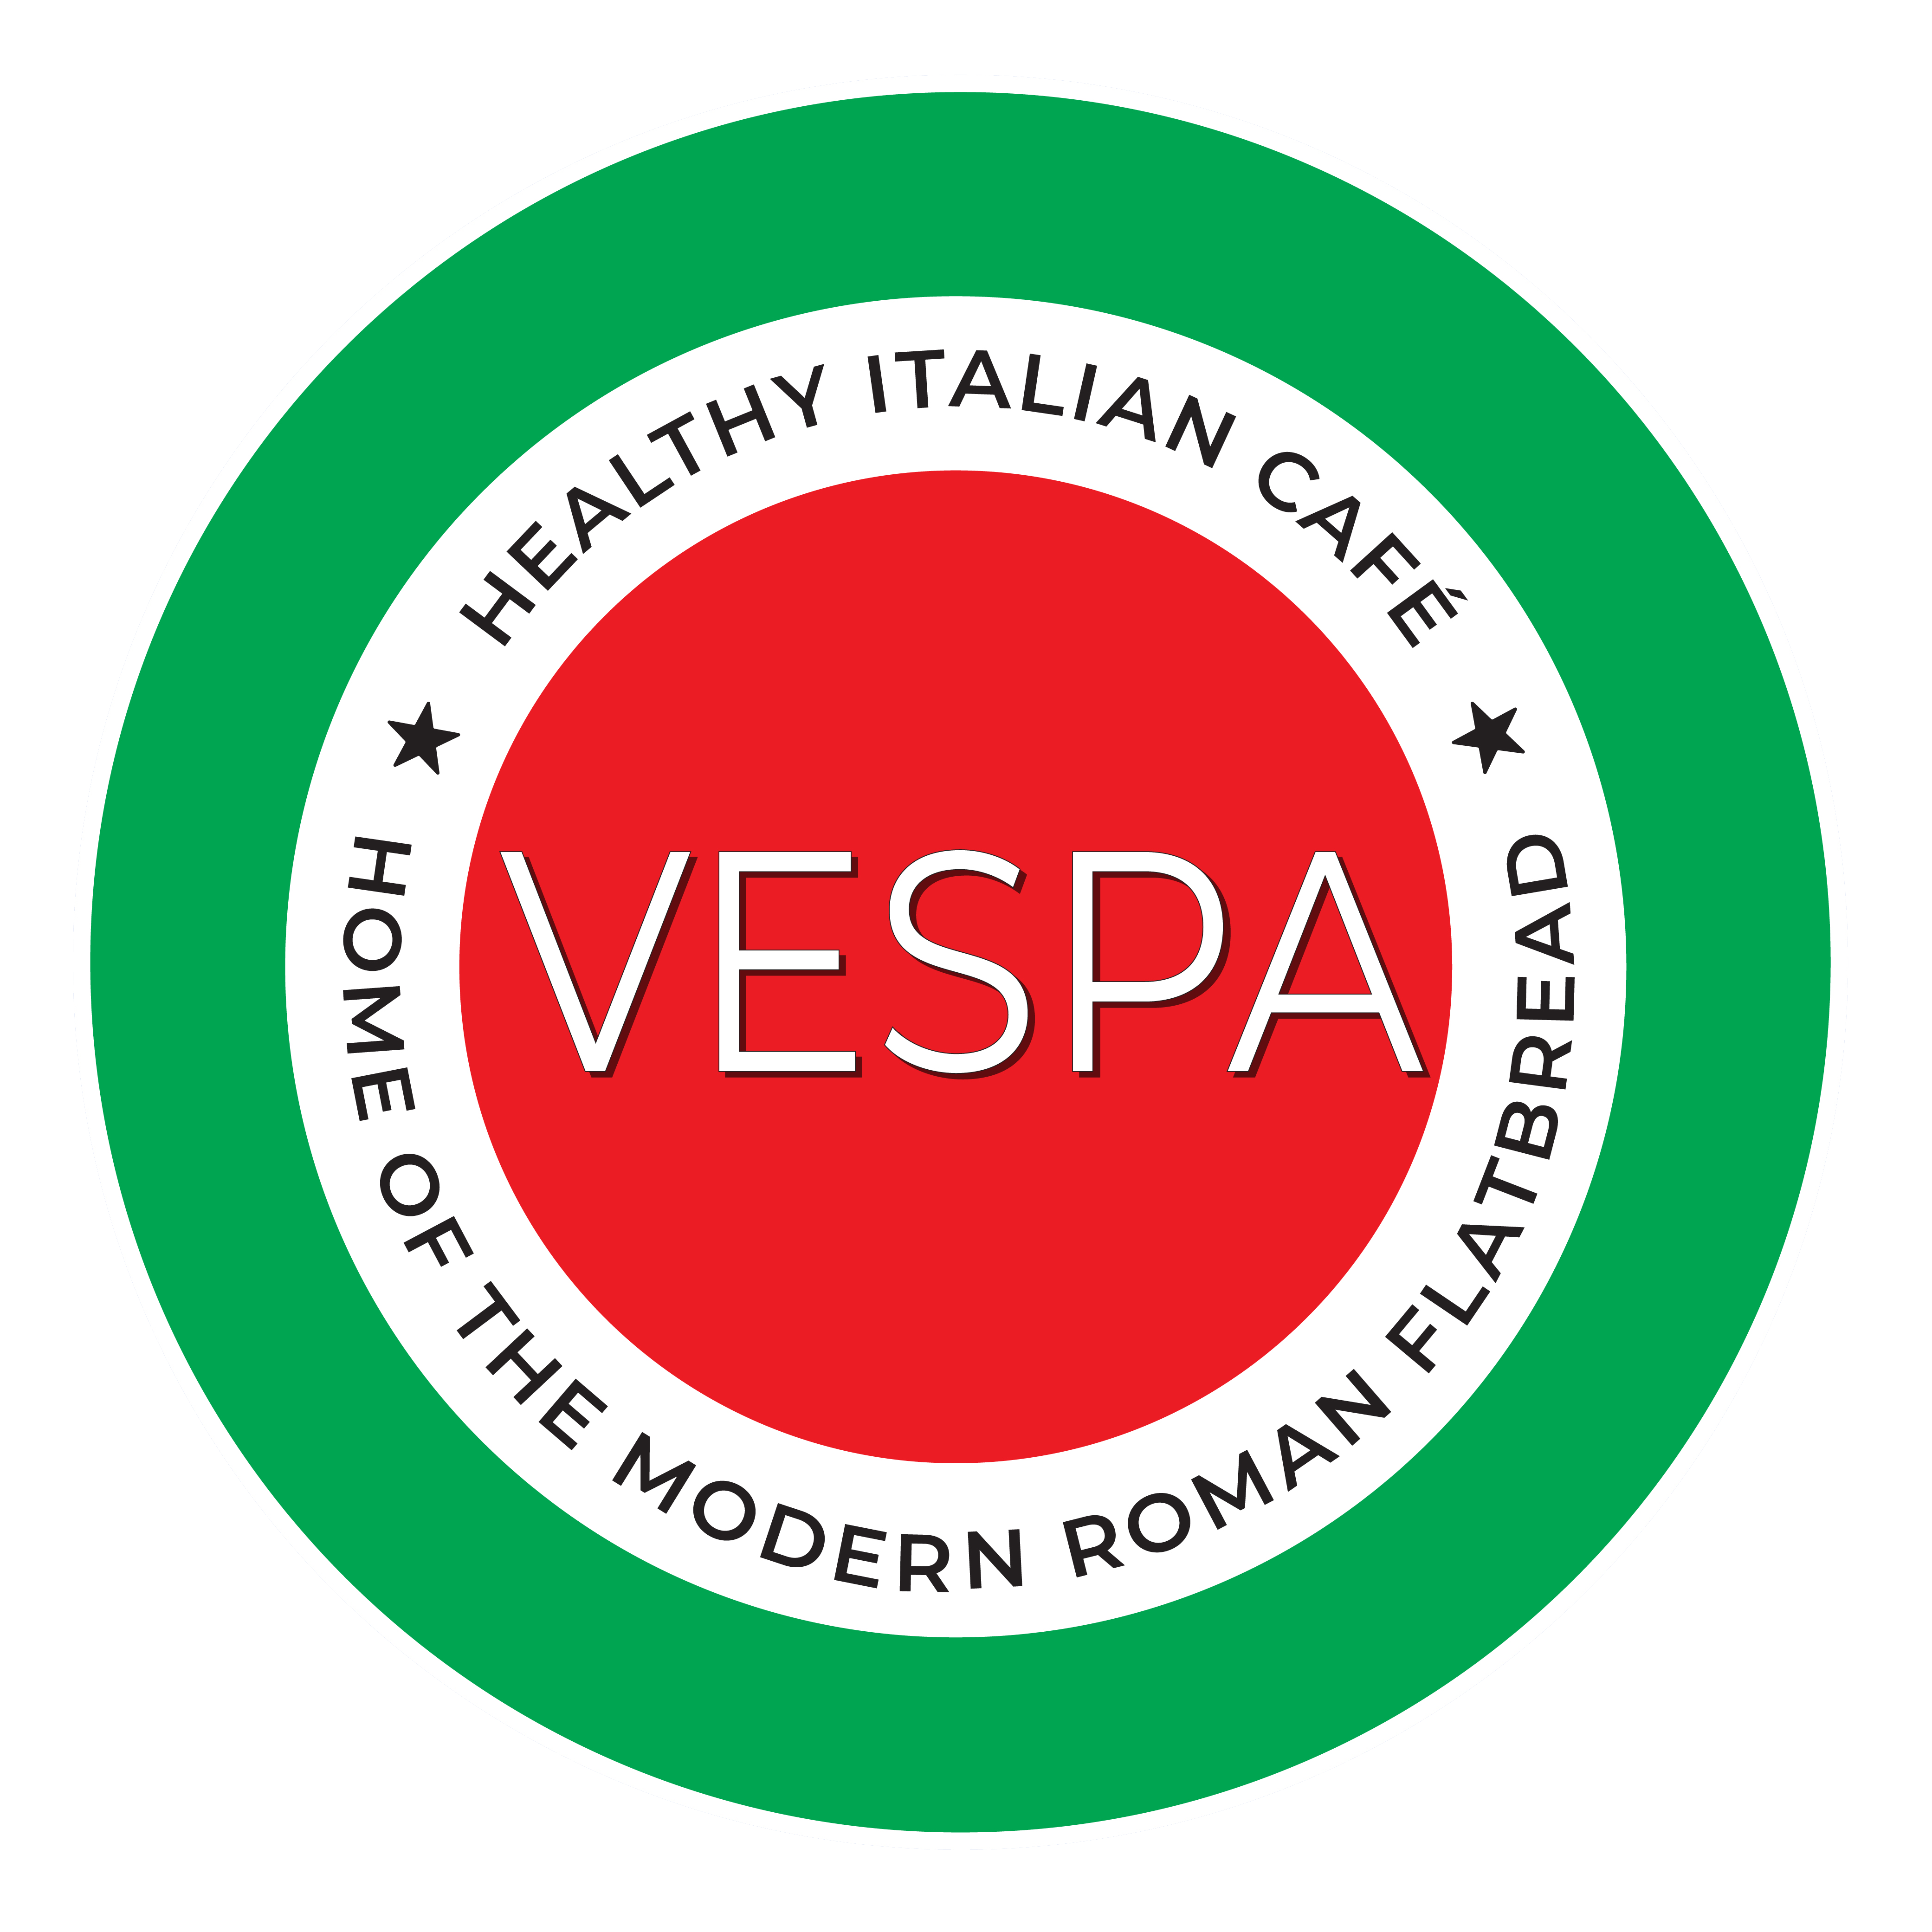 Vespa Healthy Italian Cafe